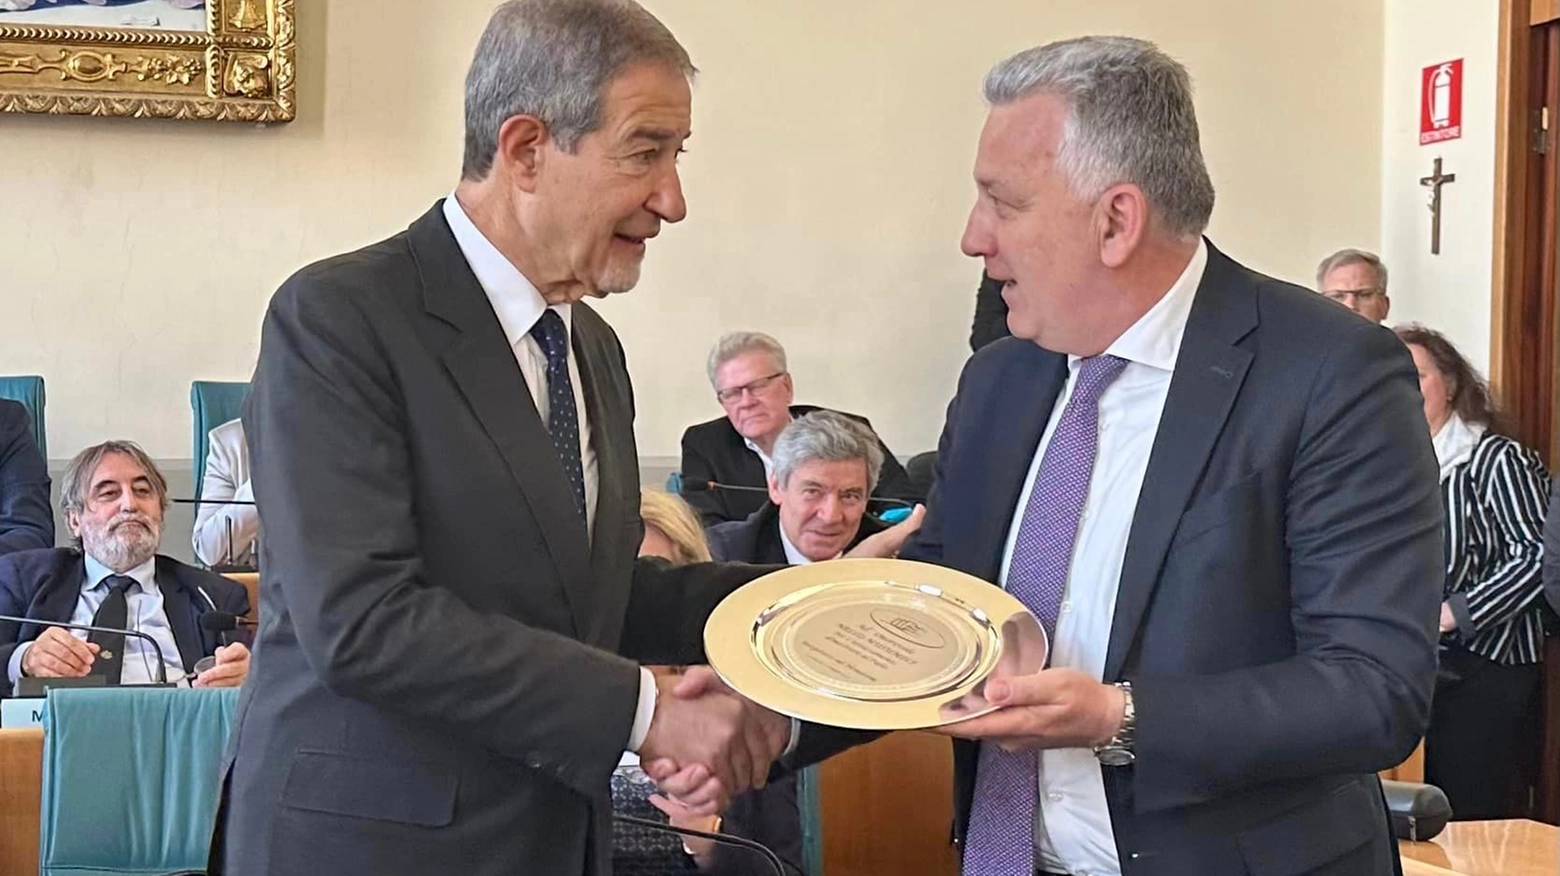 Il ministro Musumeci riceva la targa dal sindaco Peracchini